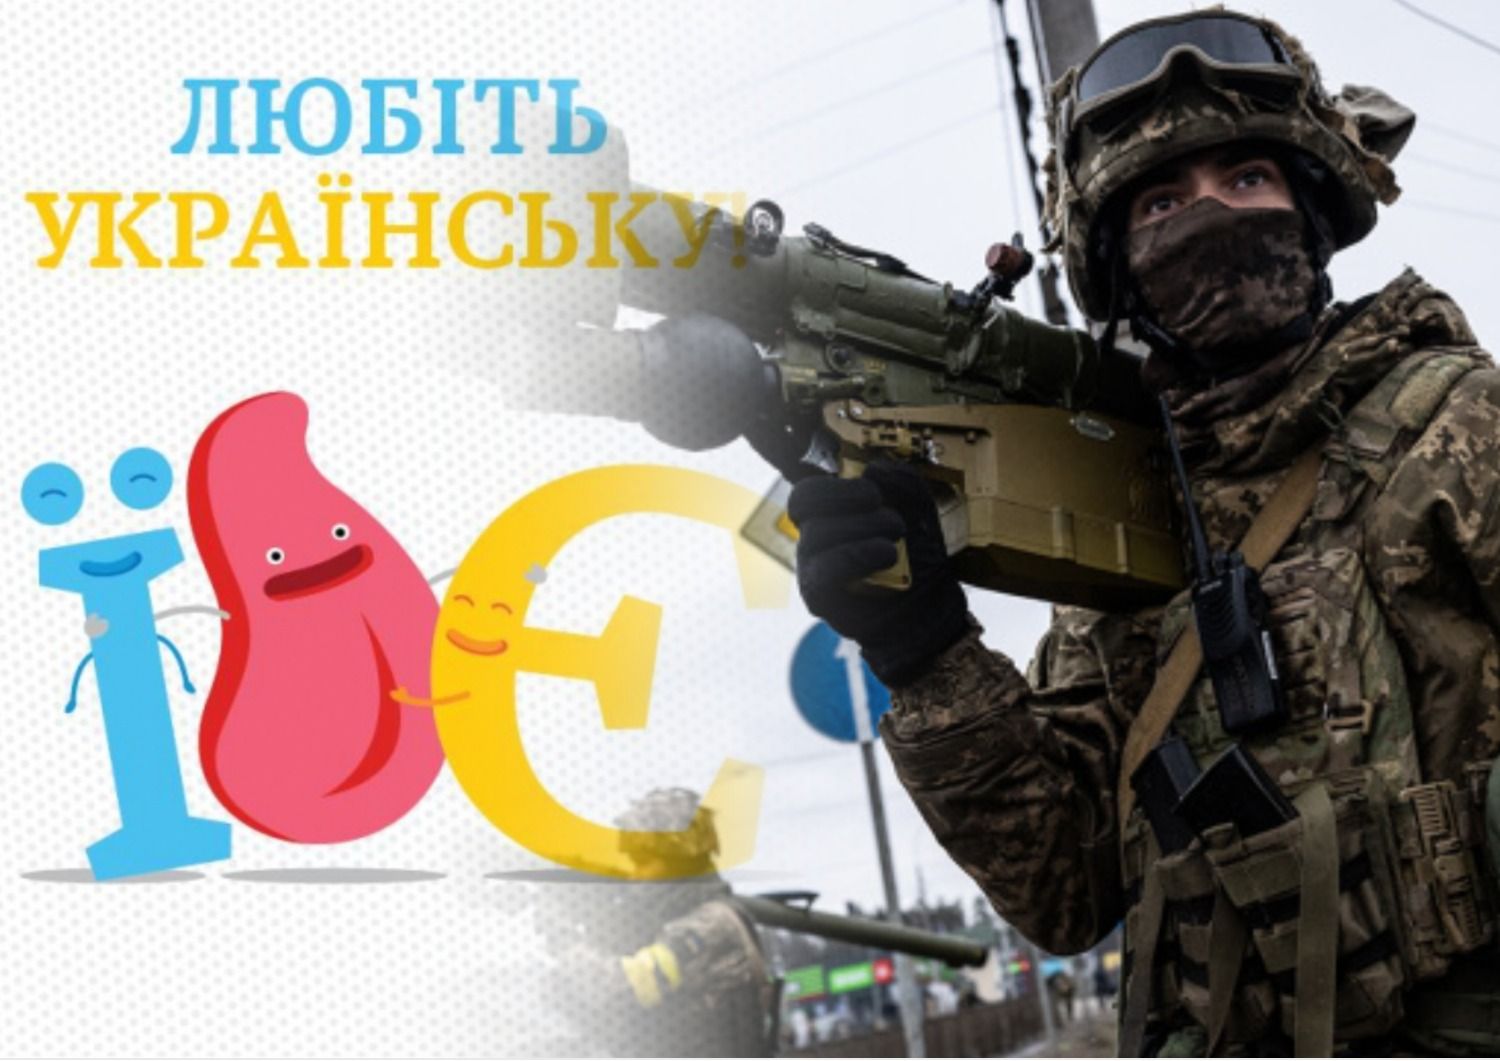 Антисуржик - як правильно говорити українською про ЗСУ - 24 канал - українська мова - Освіта